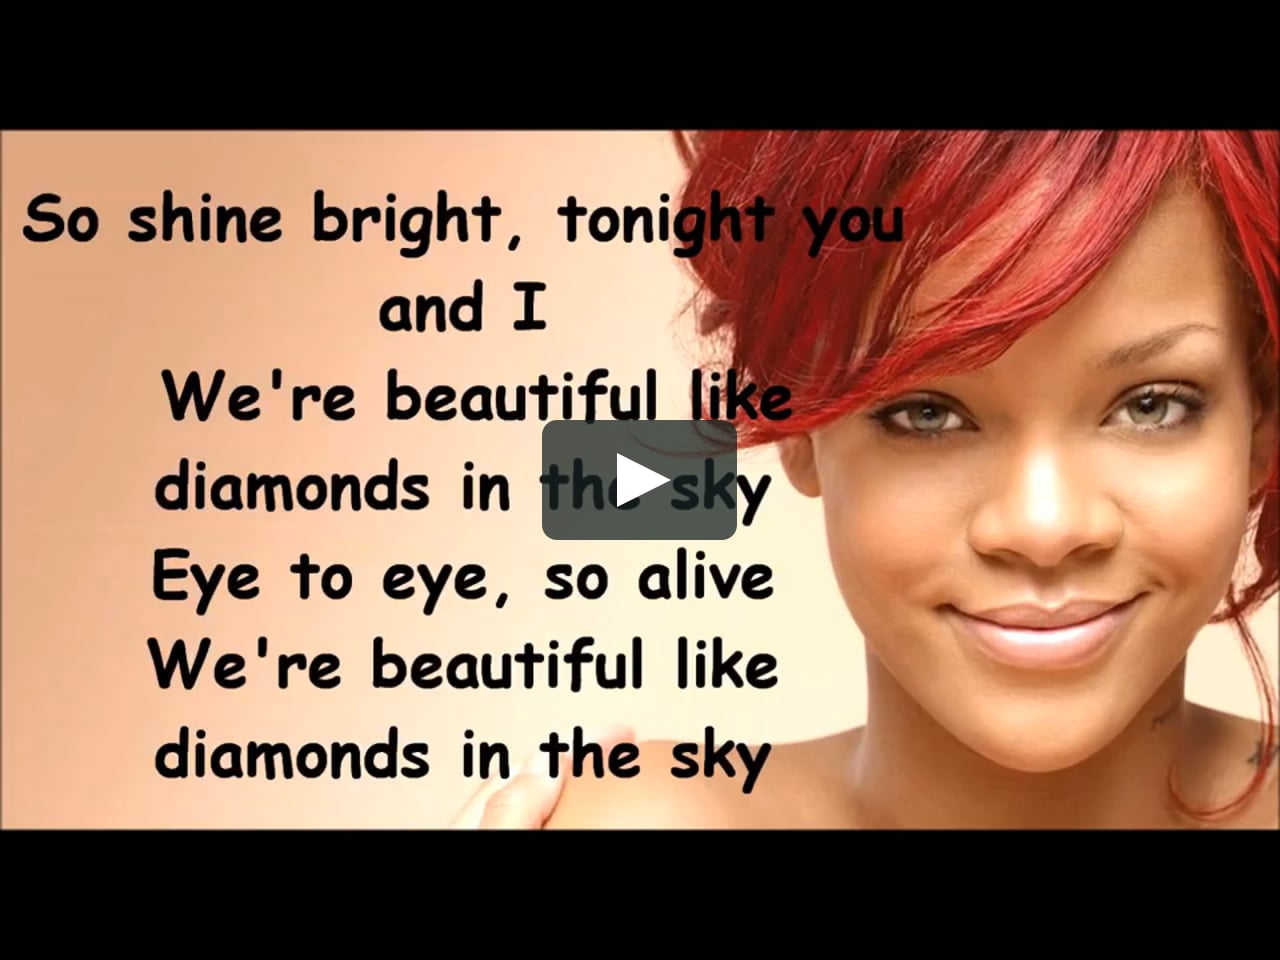 rihanna shine bright like a diamond youtube